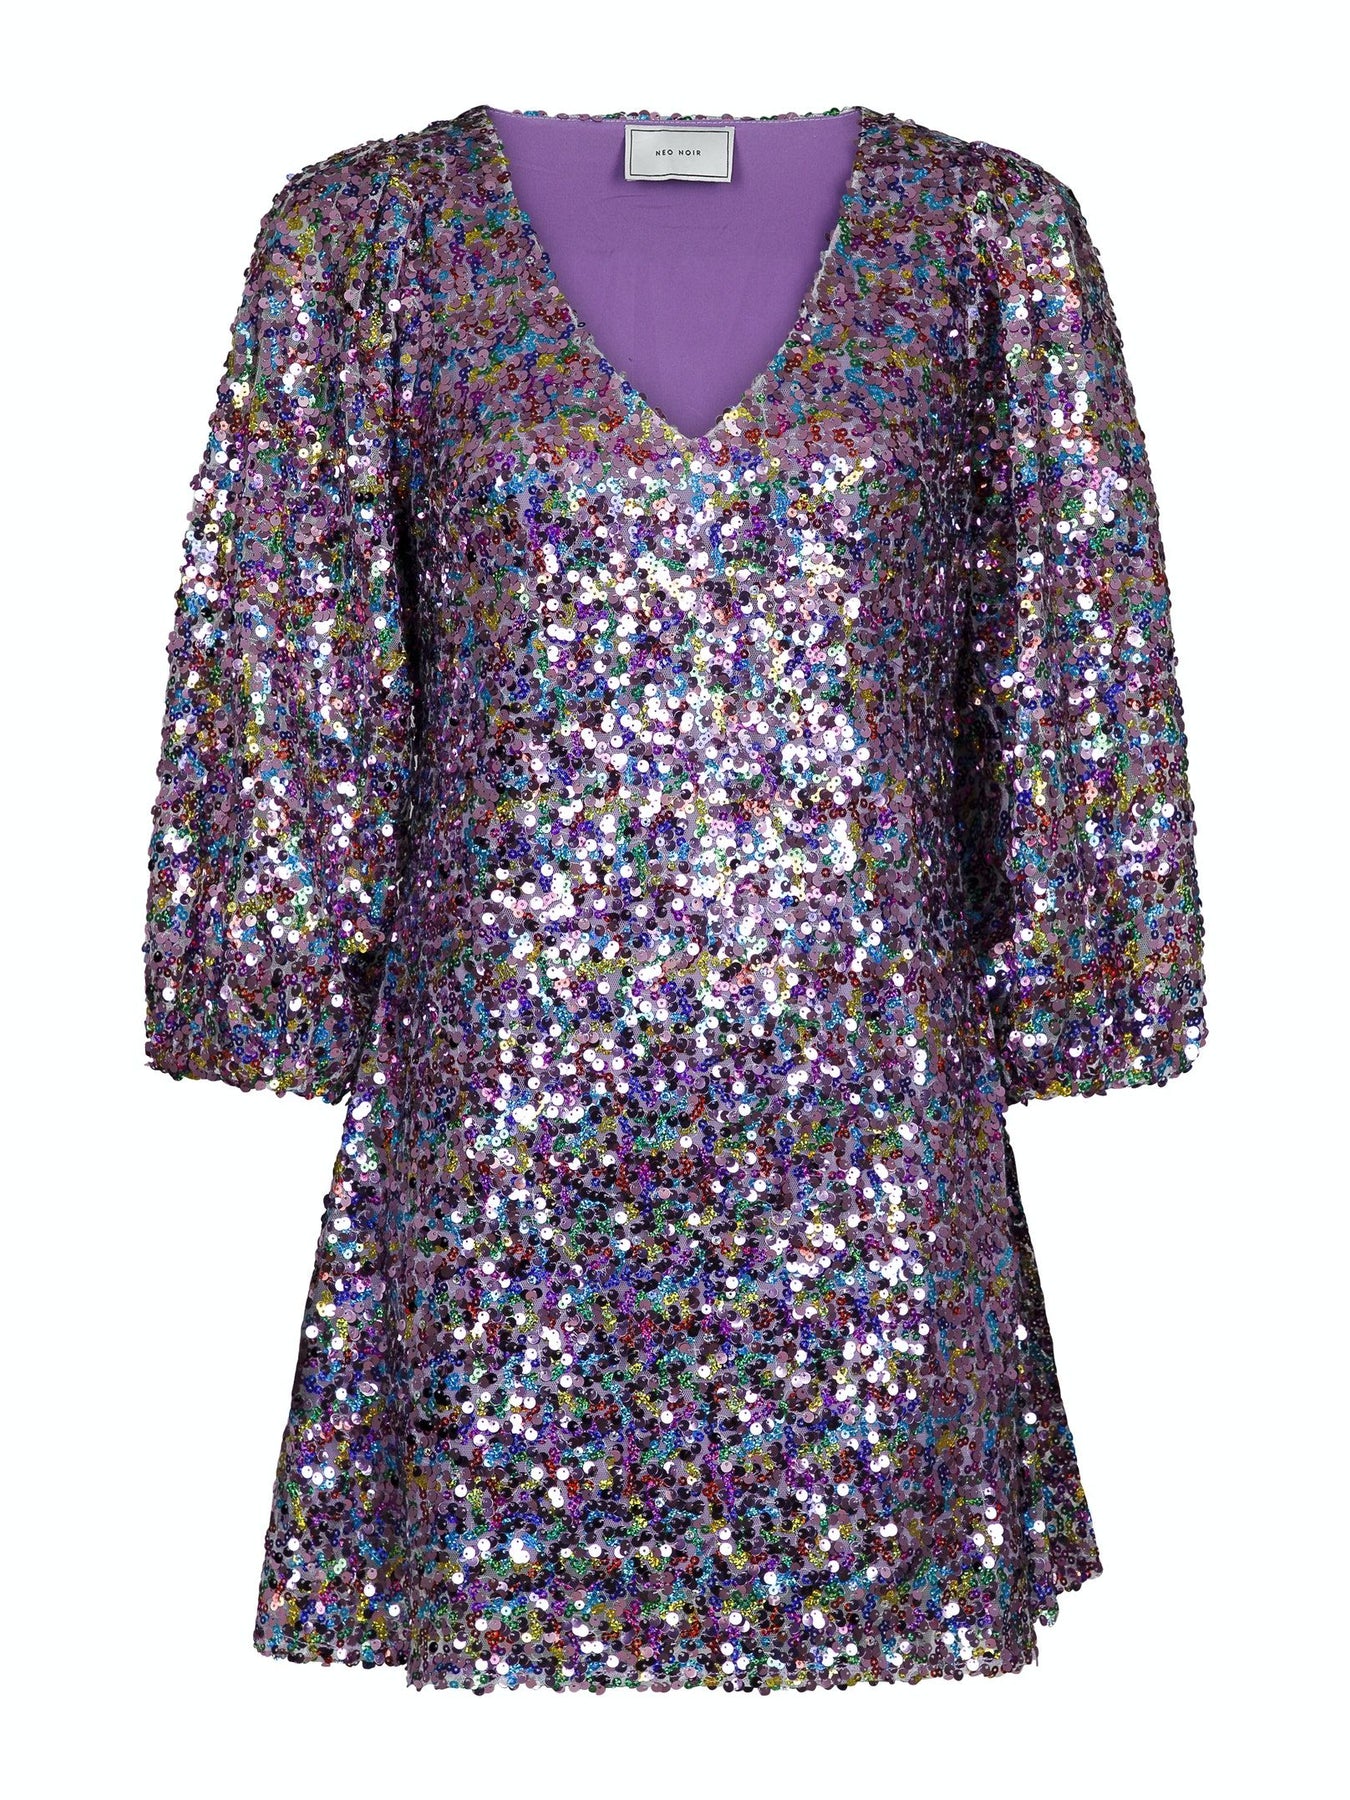 Sloane Confetti Sequins Dress - Multi